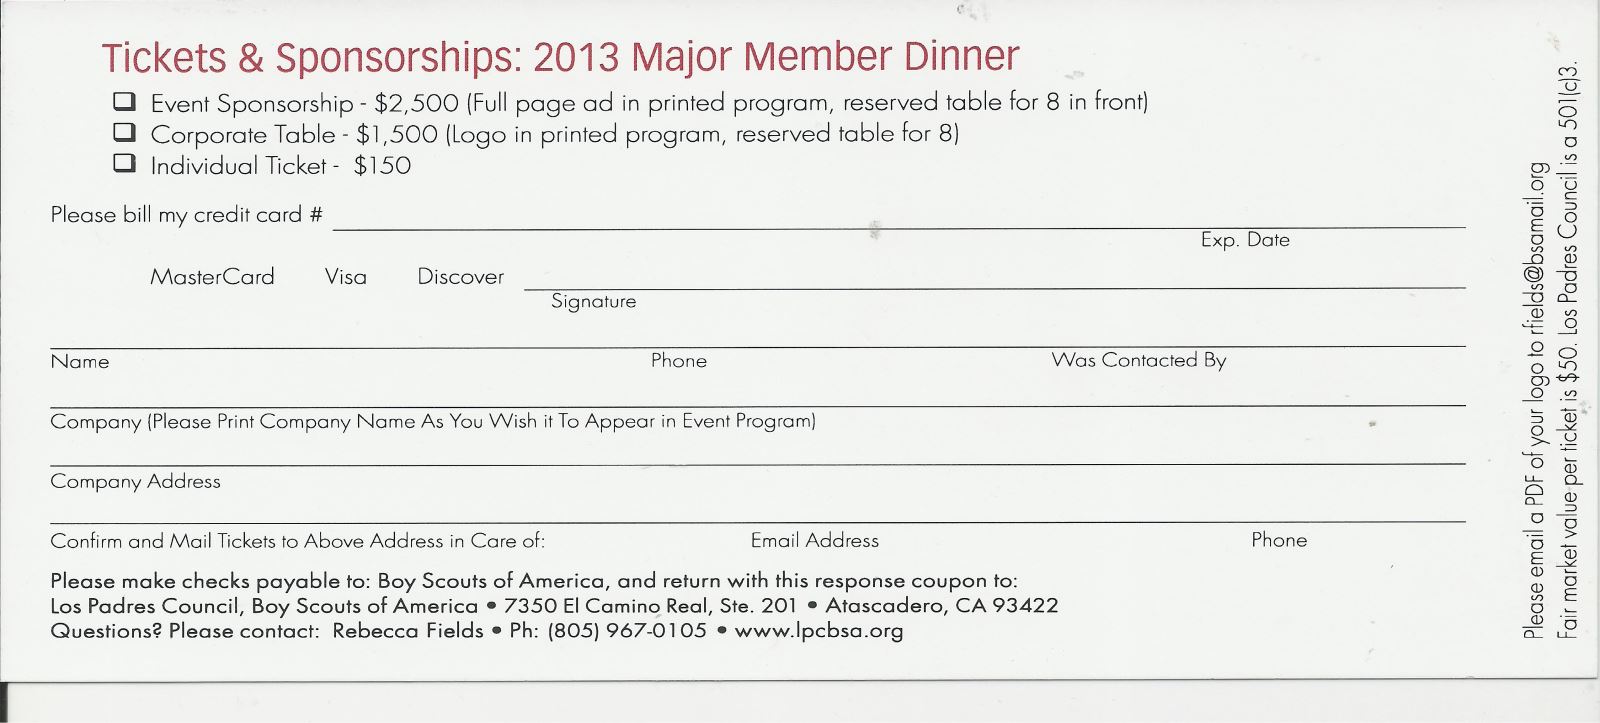 2013 Major Member Dinner Reservation Stub